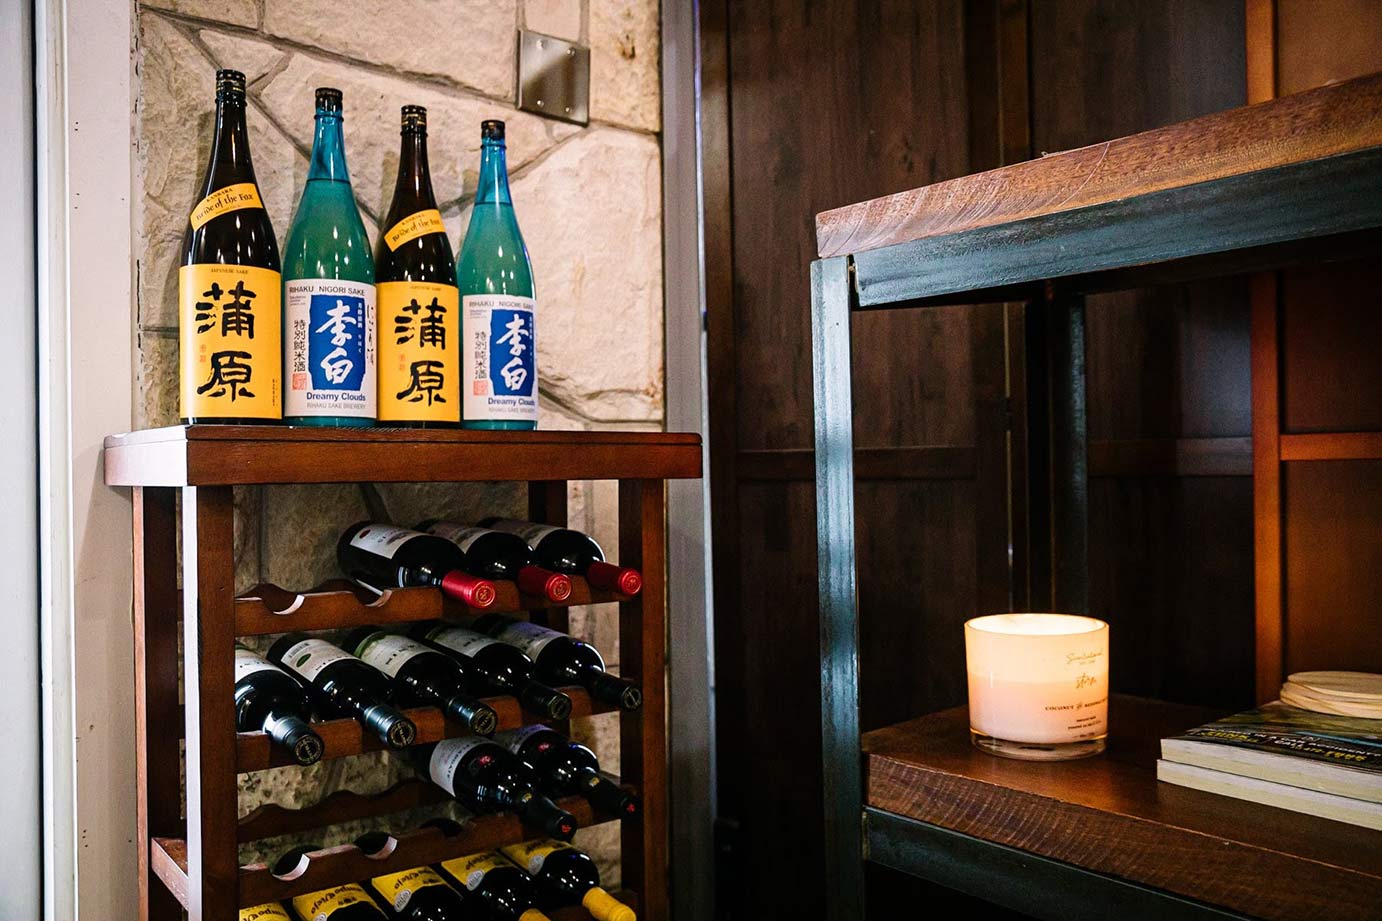 Wine bottle shelf